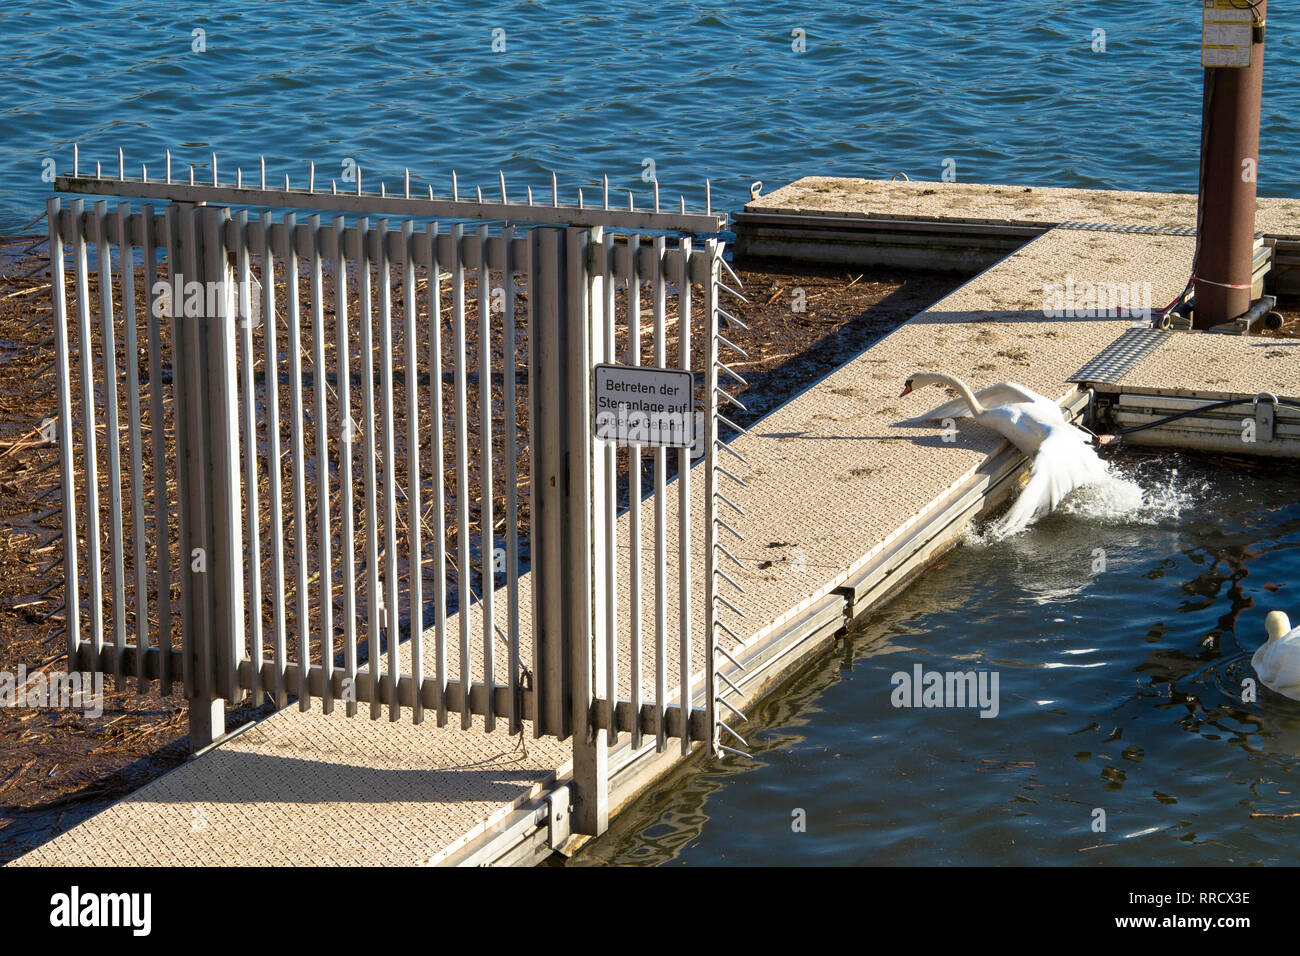 swan tries to get on a jetty at lake Kemnade, sign enter at own risk, Bochum, Germany.  Schwan versucht auf einen Steg am Kemnader See zu kommen, Schi Stock Photo